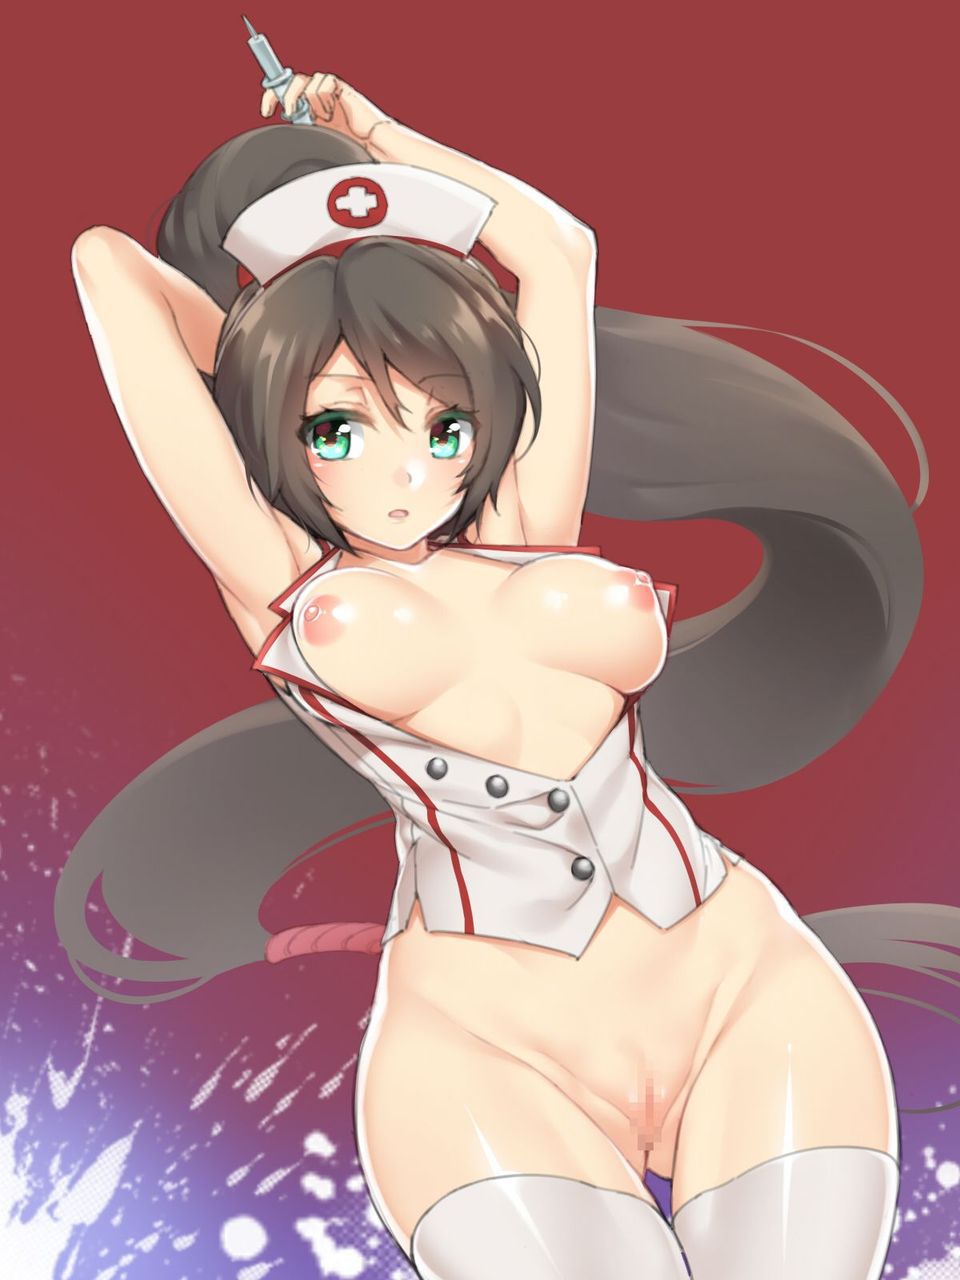 [2次] wearing a nurses outfit want to be nursed with the sat variety girl second erotic images part 5 [nurse] 19